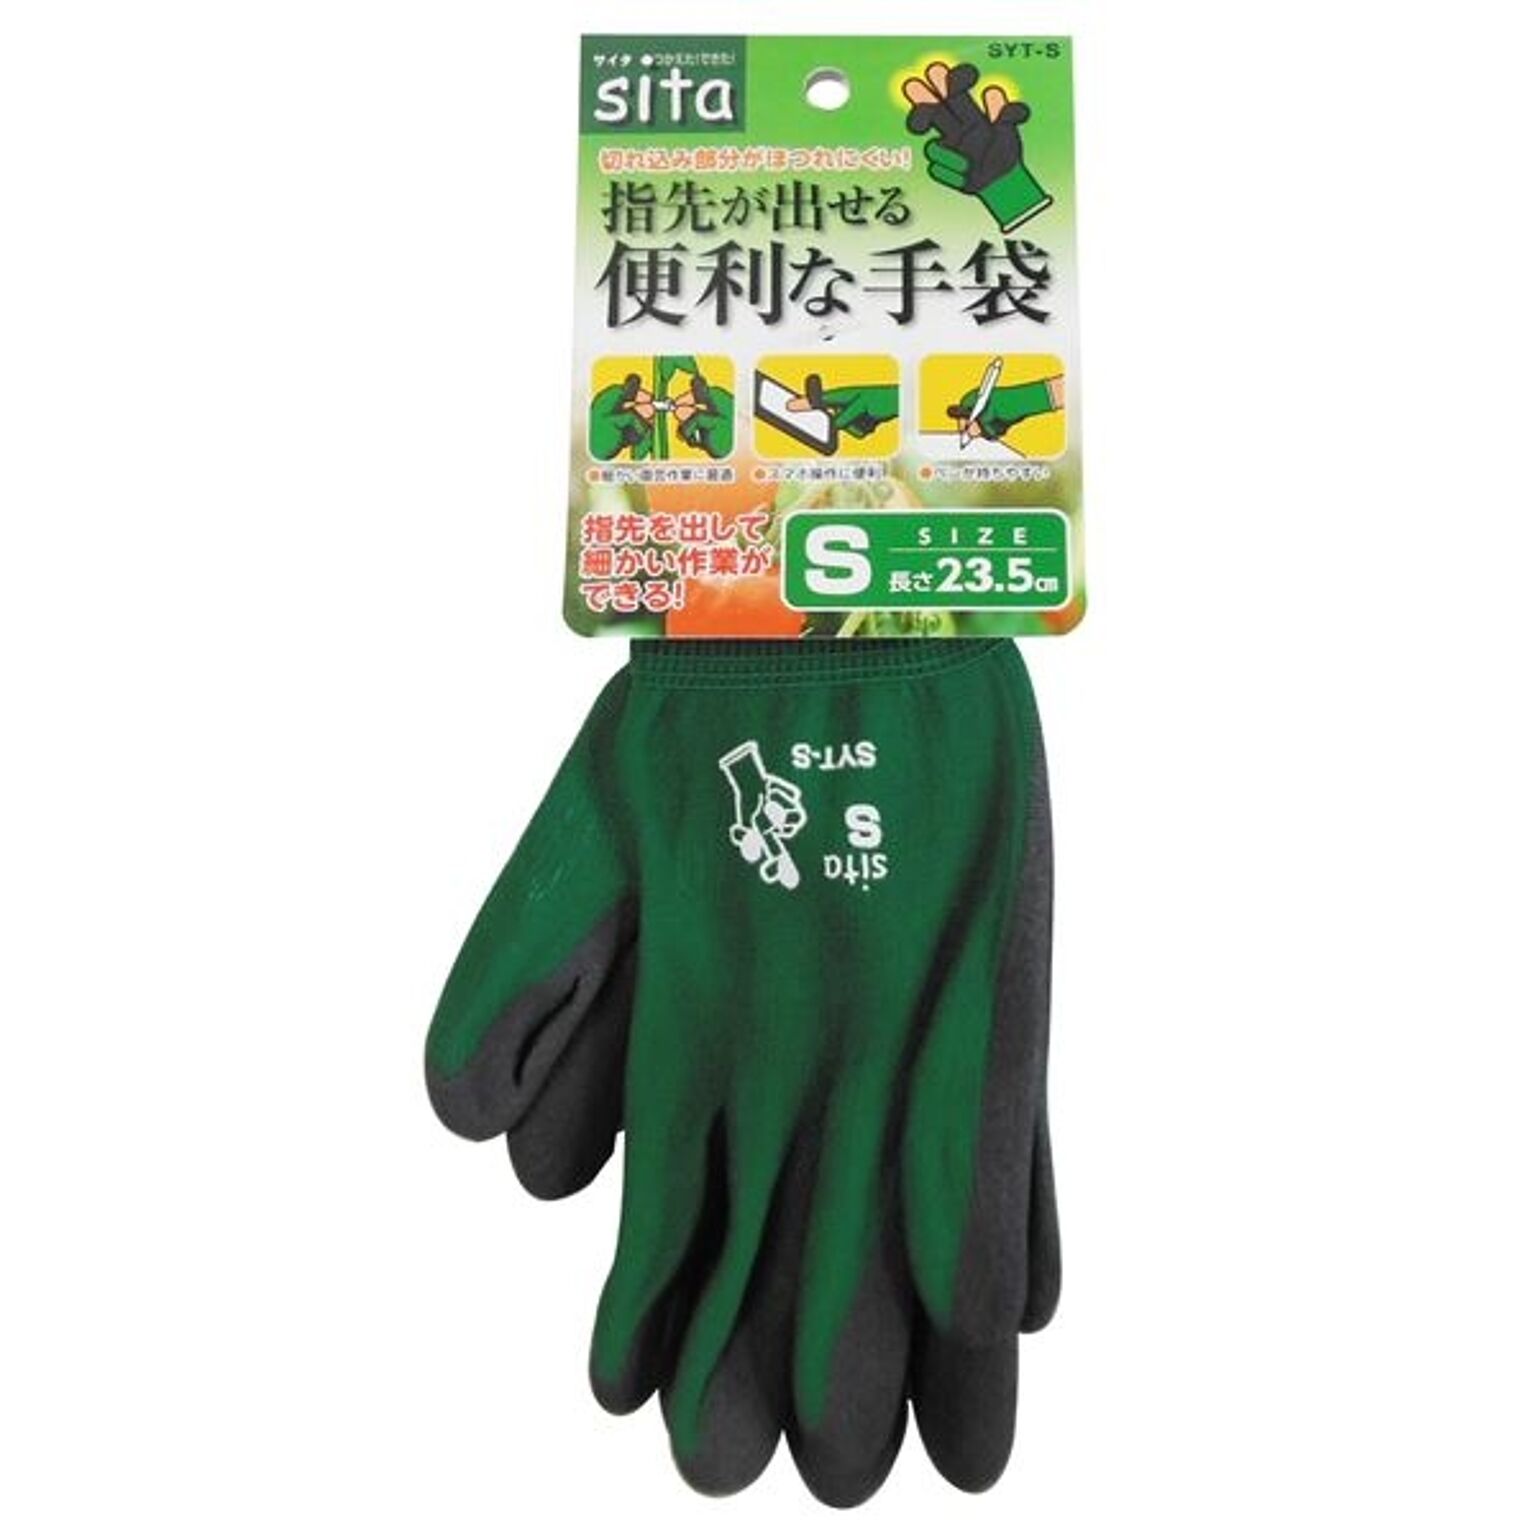 (業務用5個セット) Sita 指先が出せる便利な手袋 【S】 SYT-S